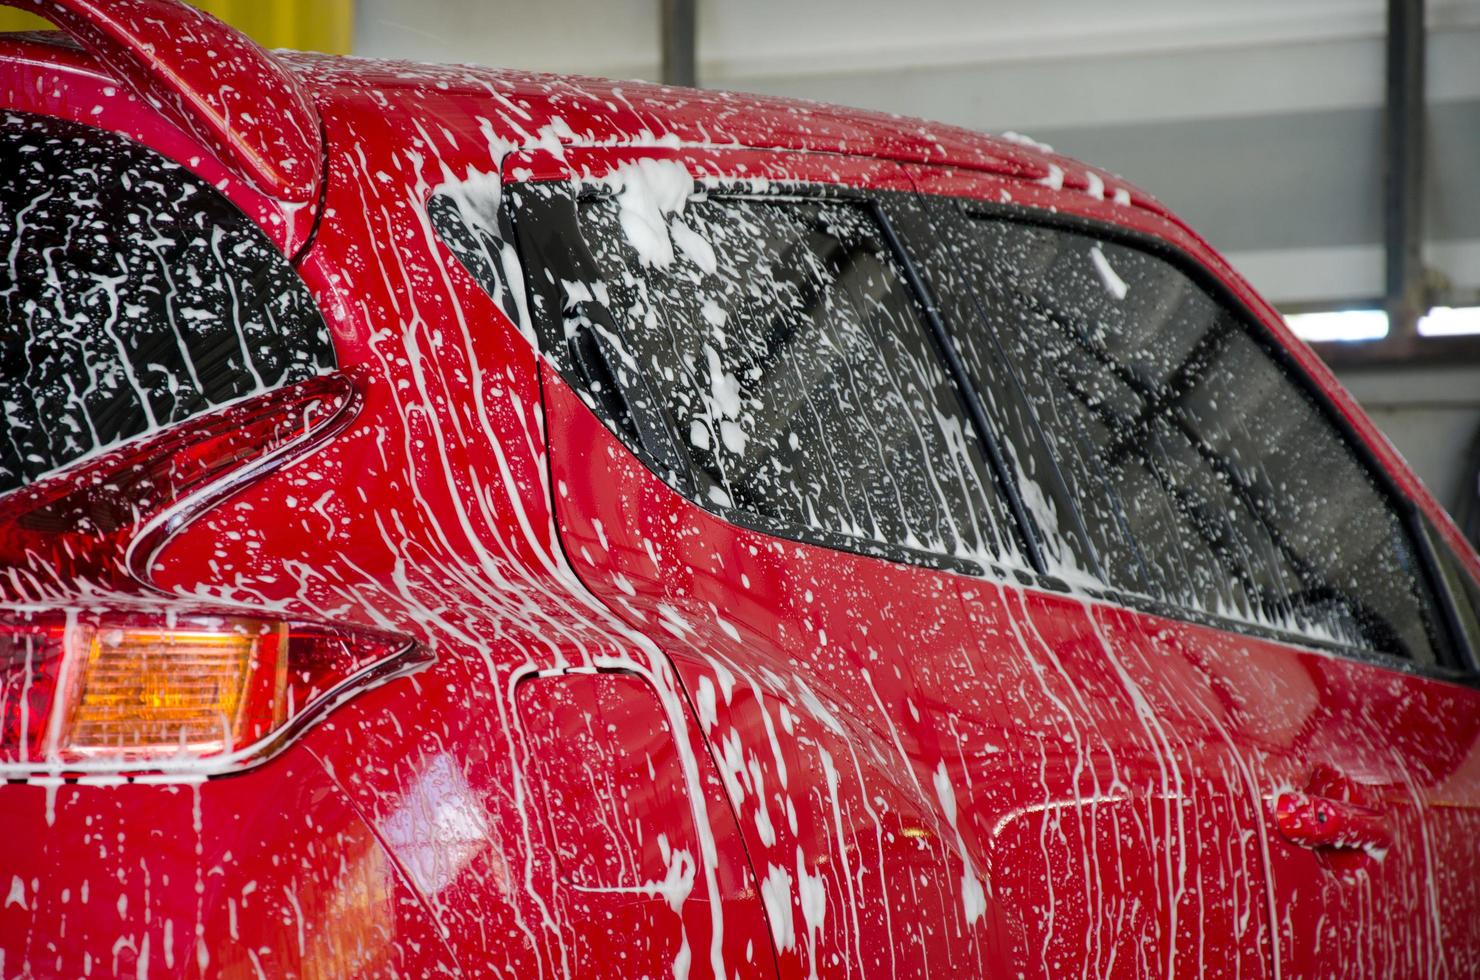 voiture rouge en cours de lavage photo